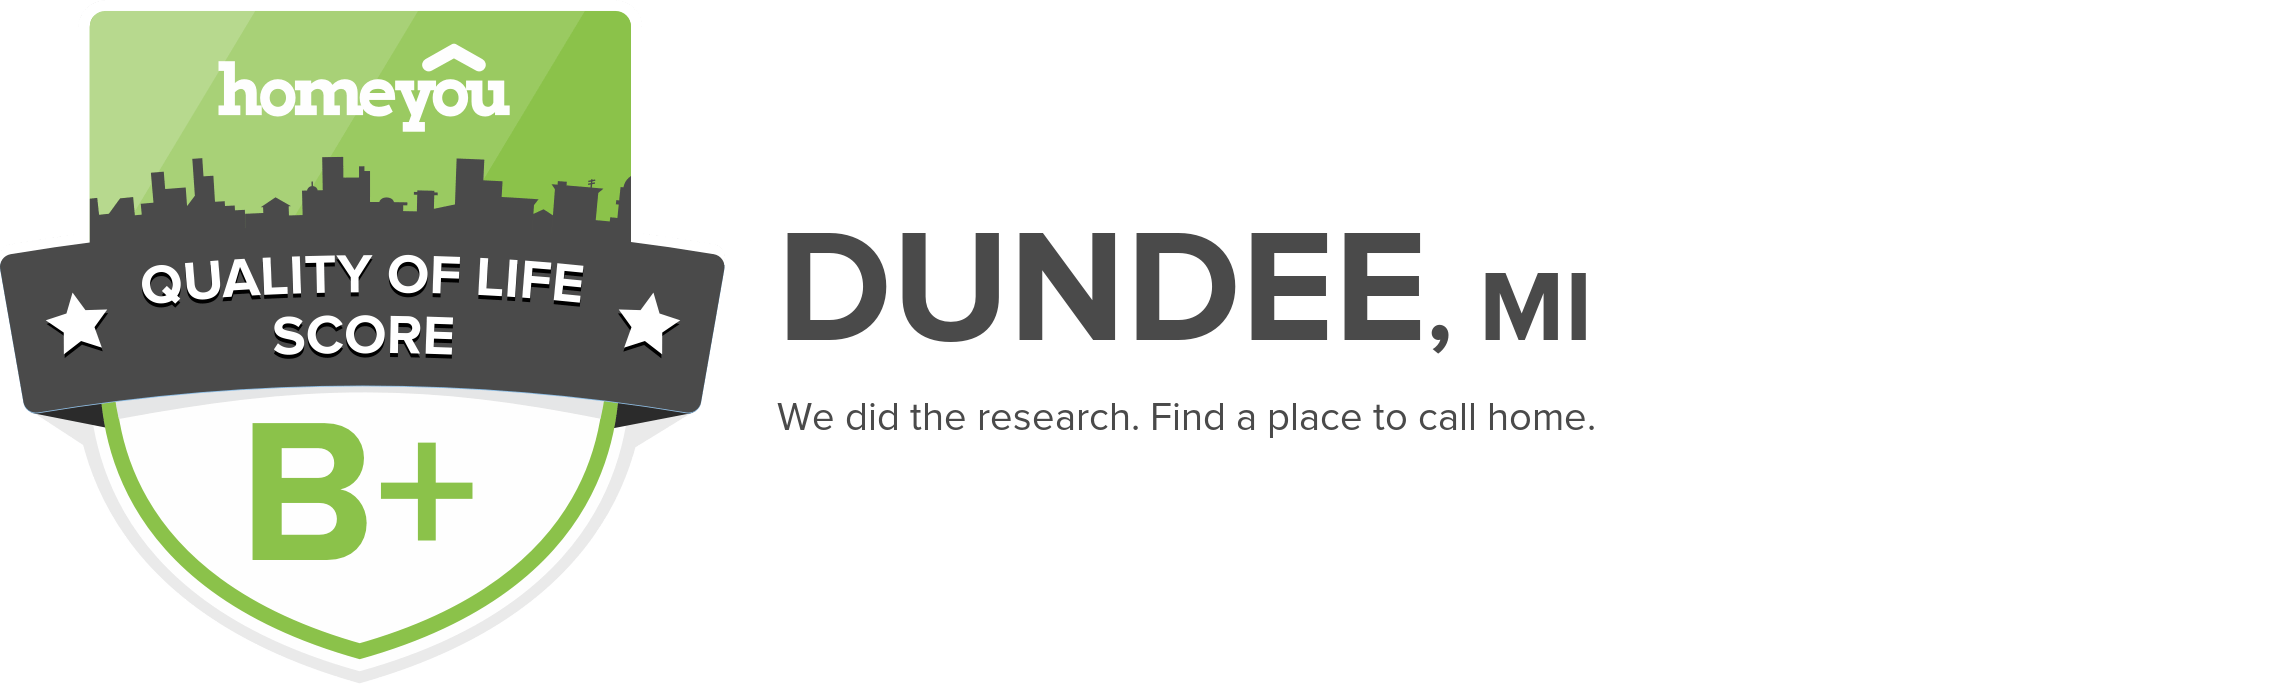 Dundee, MI